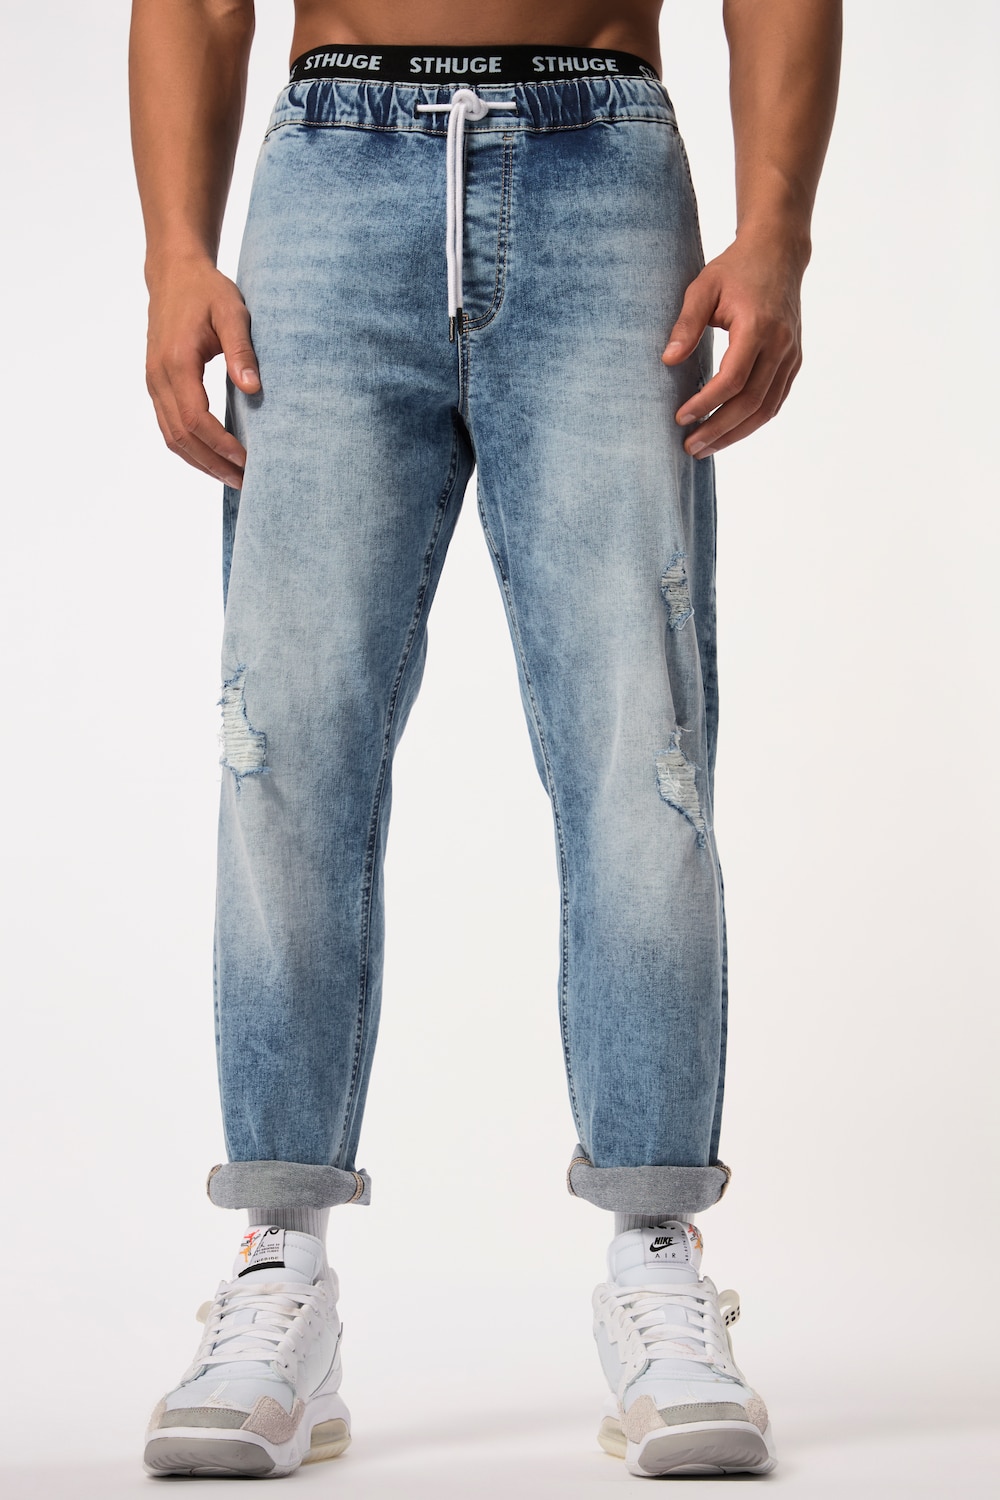 grandes tailles jean sthuge avec technologie flexlastic®. denim au look destroy vintage. jusqu'au 8 xl, femmes, bleu, taille: 5xl, coton, sthuge